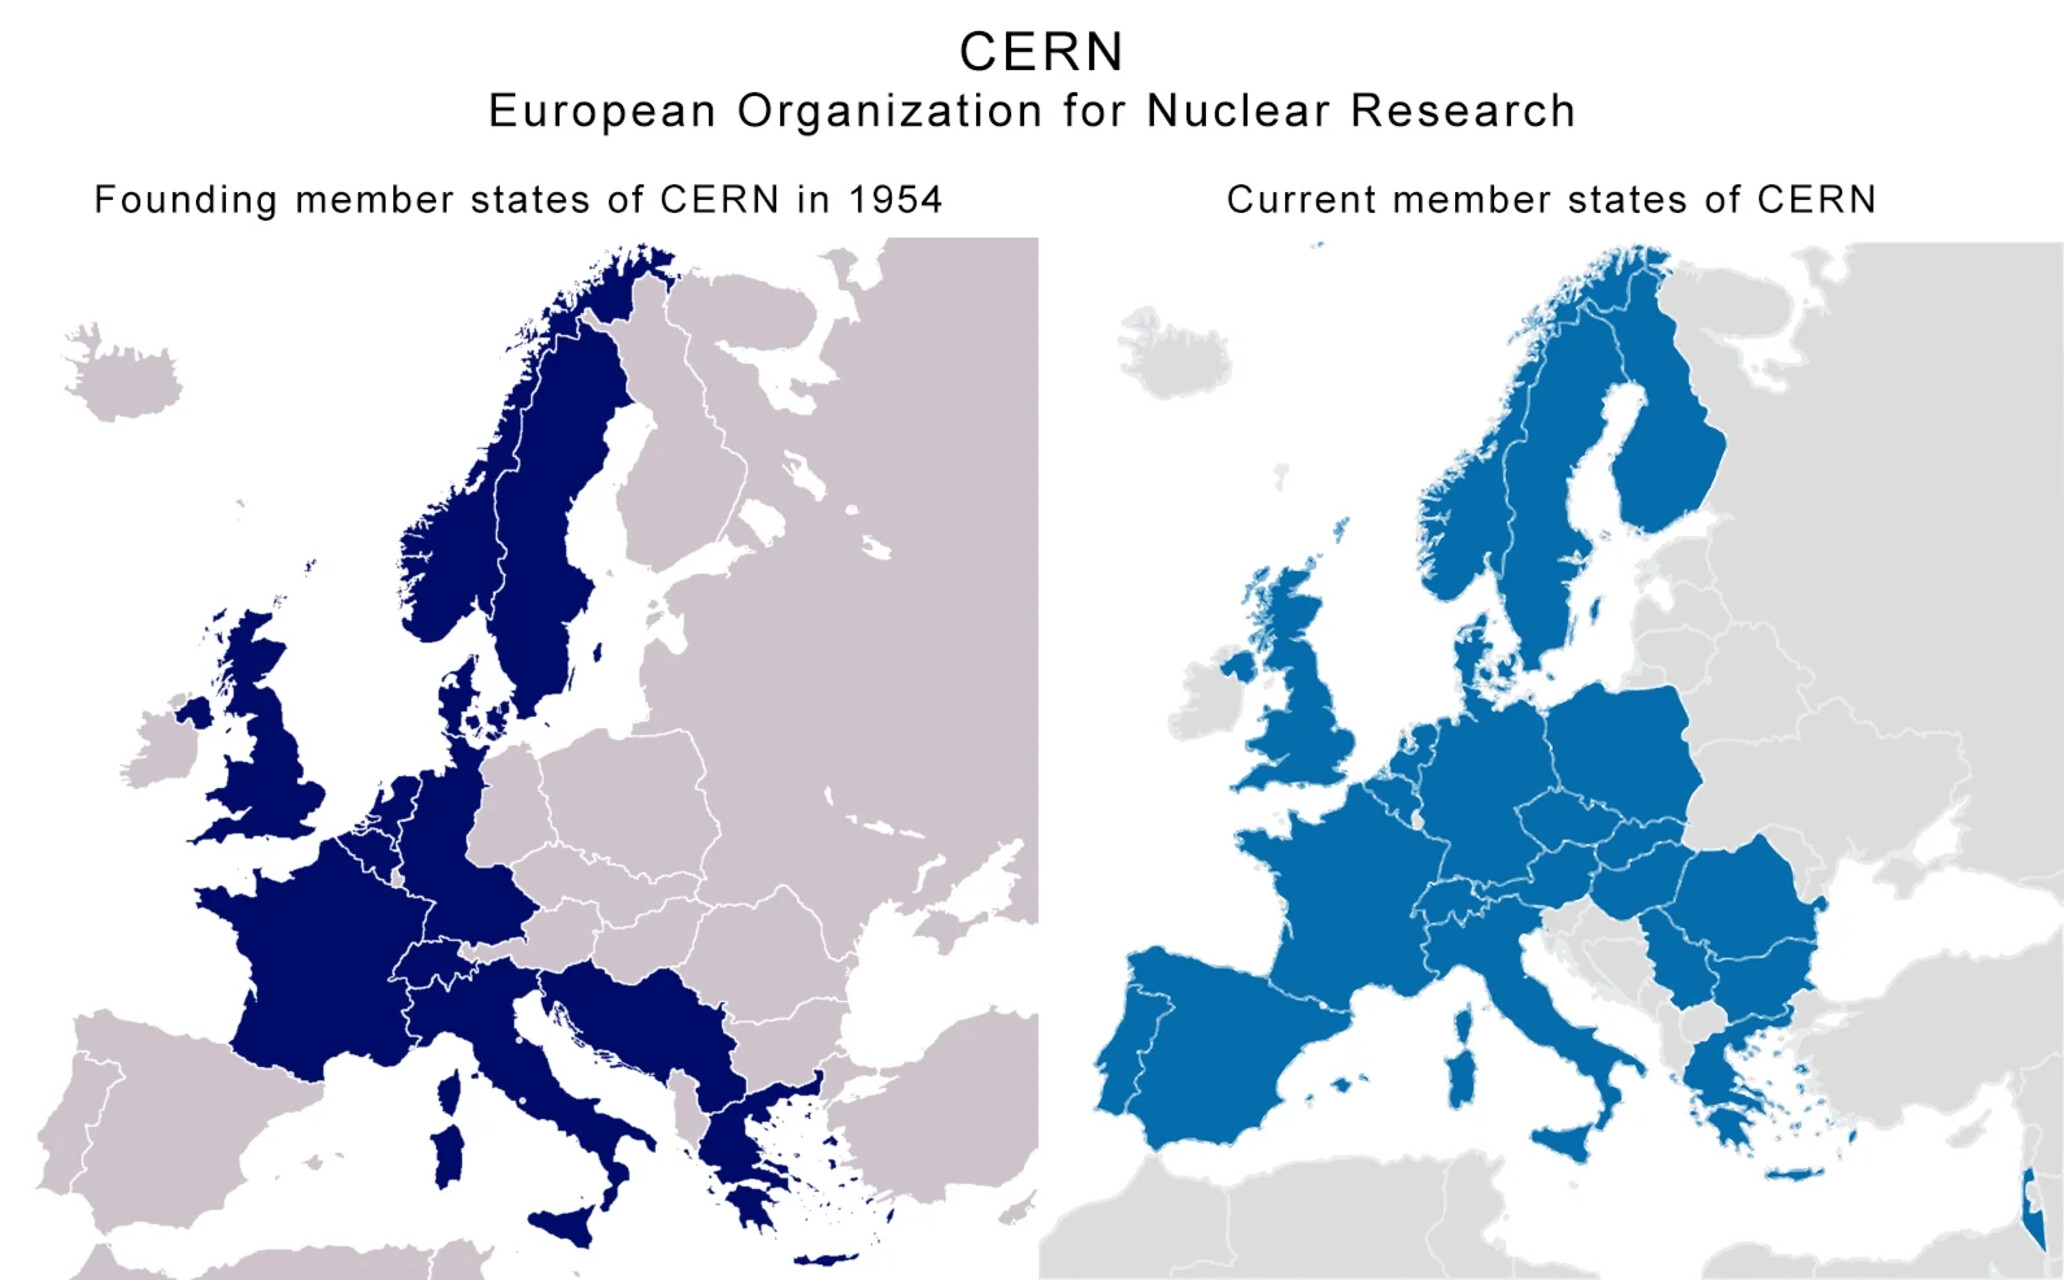 ປະເທດບຣາຊິນ: ສອງແຜນທີ່ທີ່ມີການປຽບທຽບລະຫວ່າງປະເທດທີ່ກໍ່ຕັ້ງ ແລະປະເທດສະມາຊິກຂອງ CERN ໃນປັດຈຸບັນ